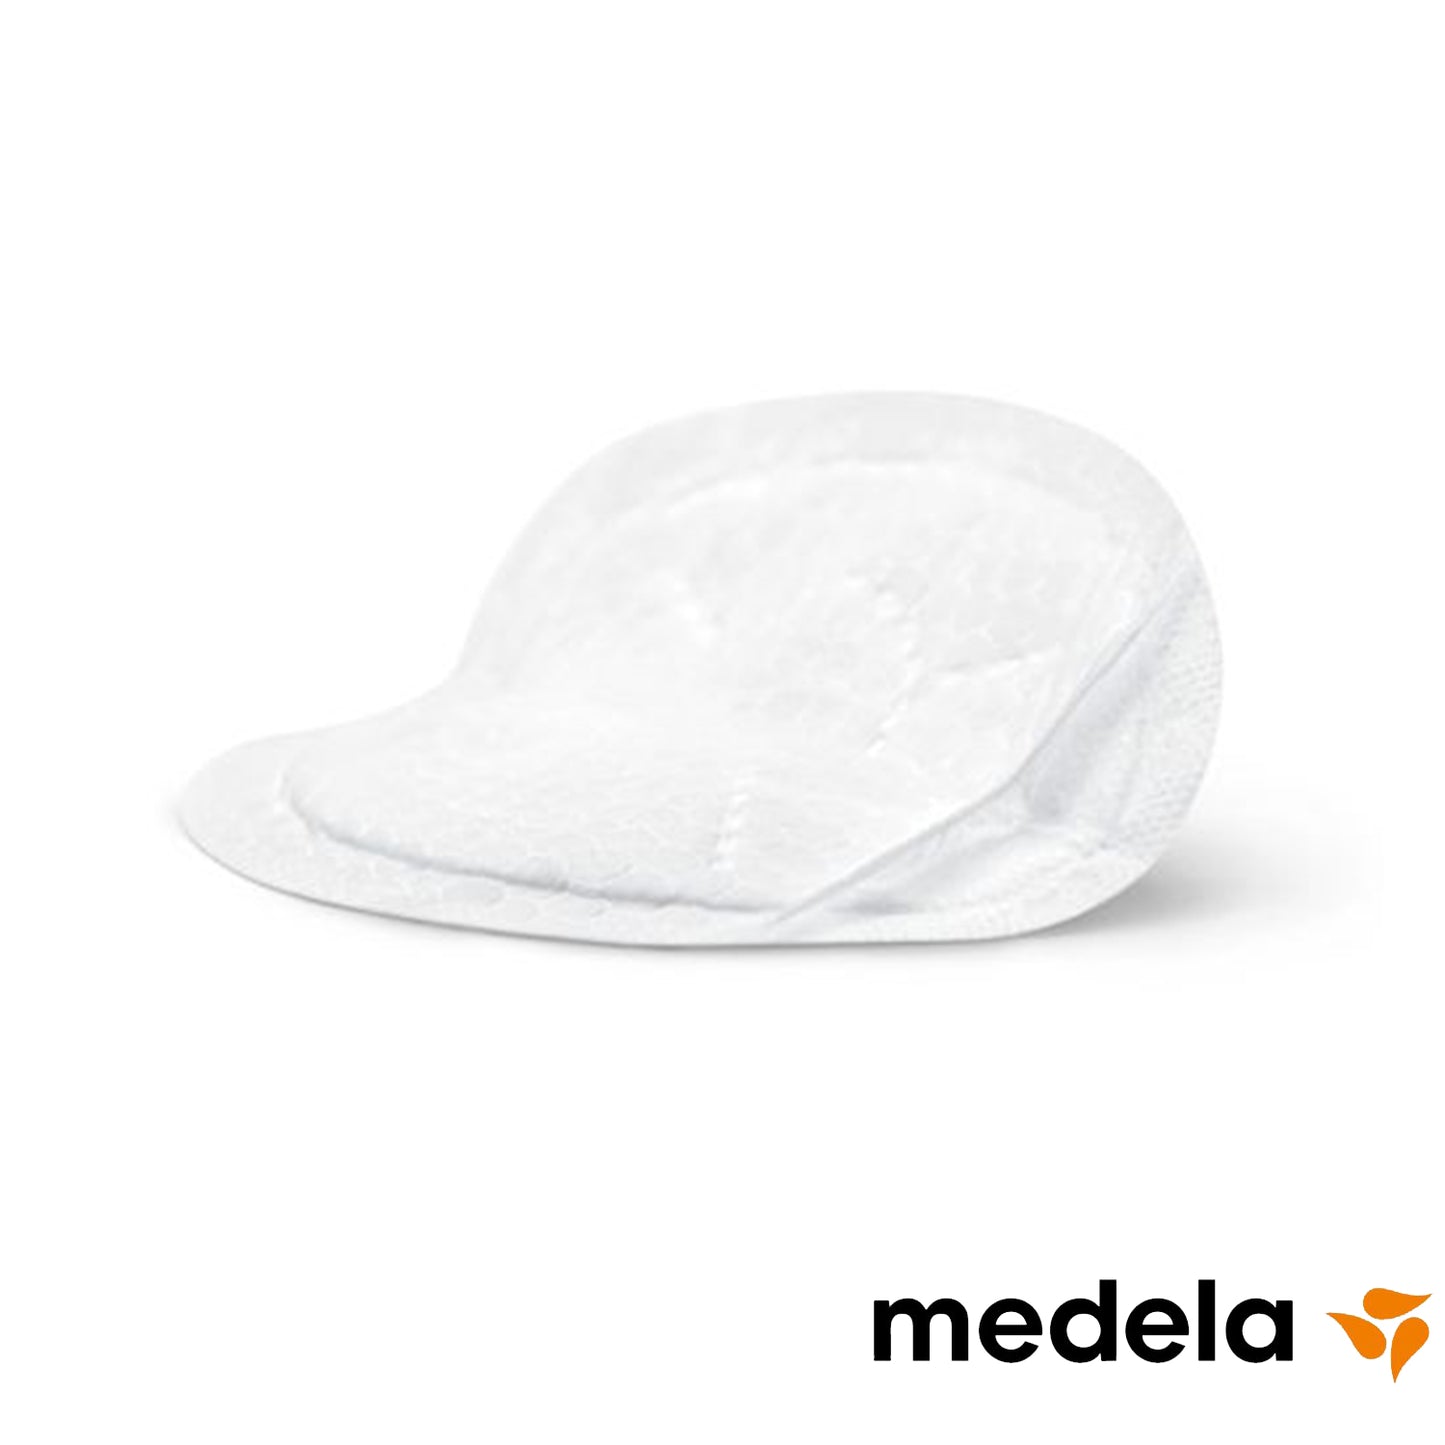 Medela - Coppette Assorbilatte Monouso Safe &amp; Dry Ultra thin